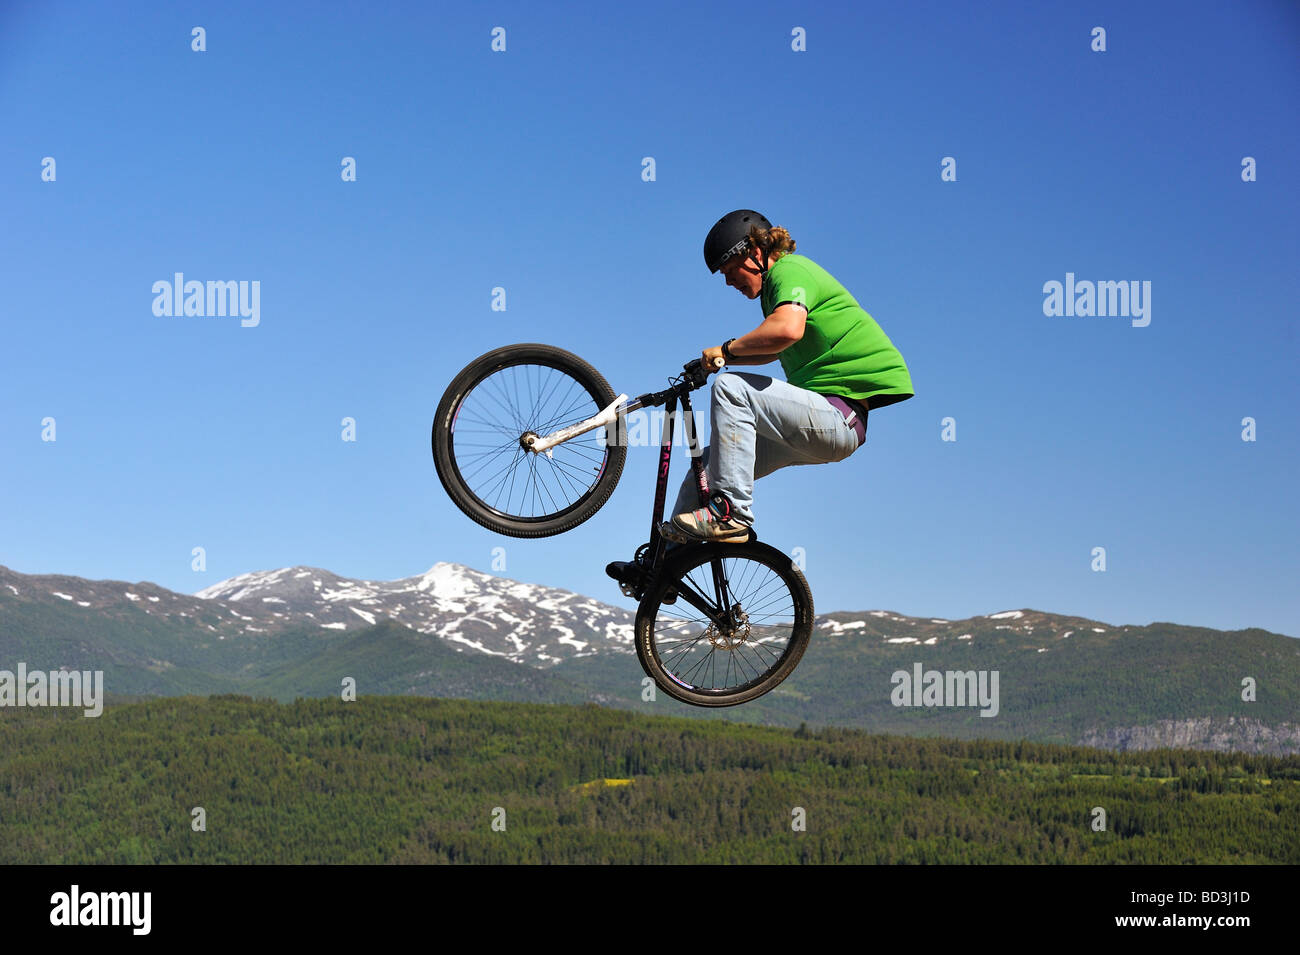 Le BMX rider volant dans les airs avec la forêt et montagne en arrière-plan Banque D'Images